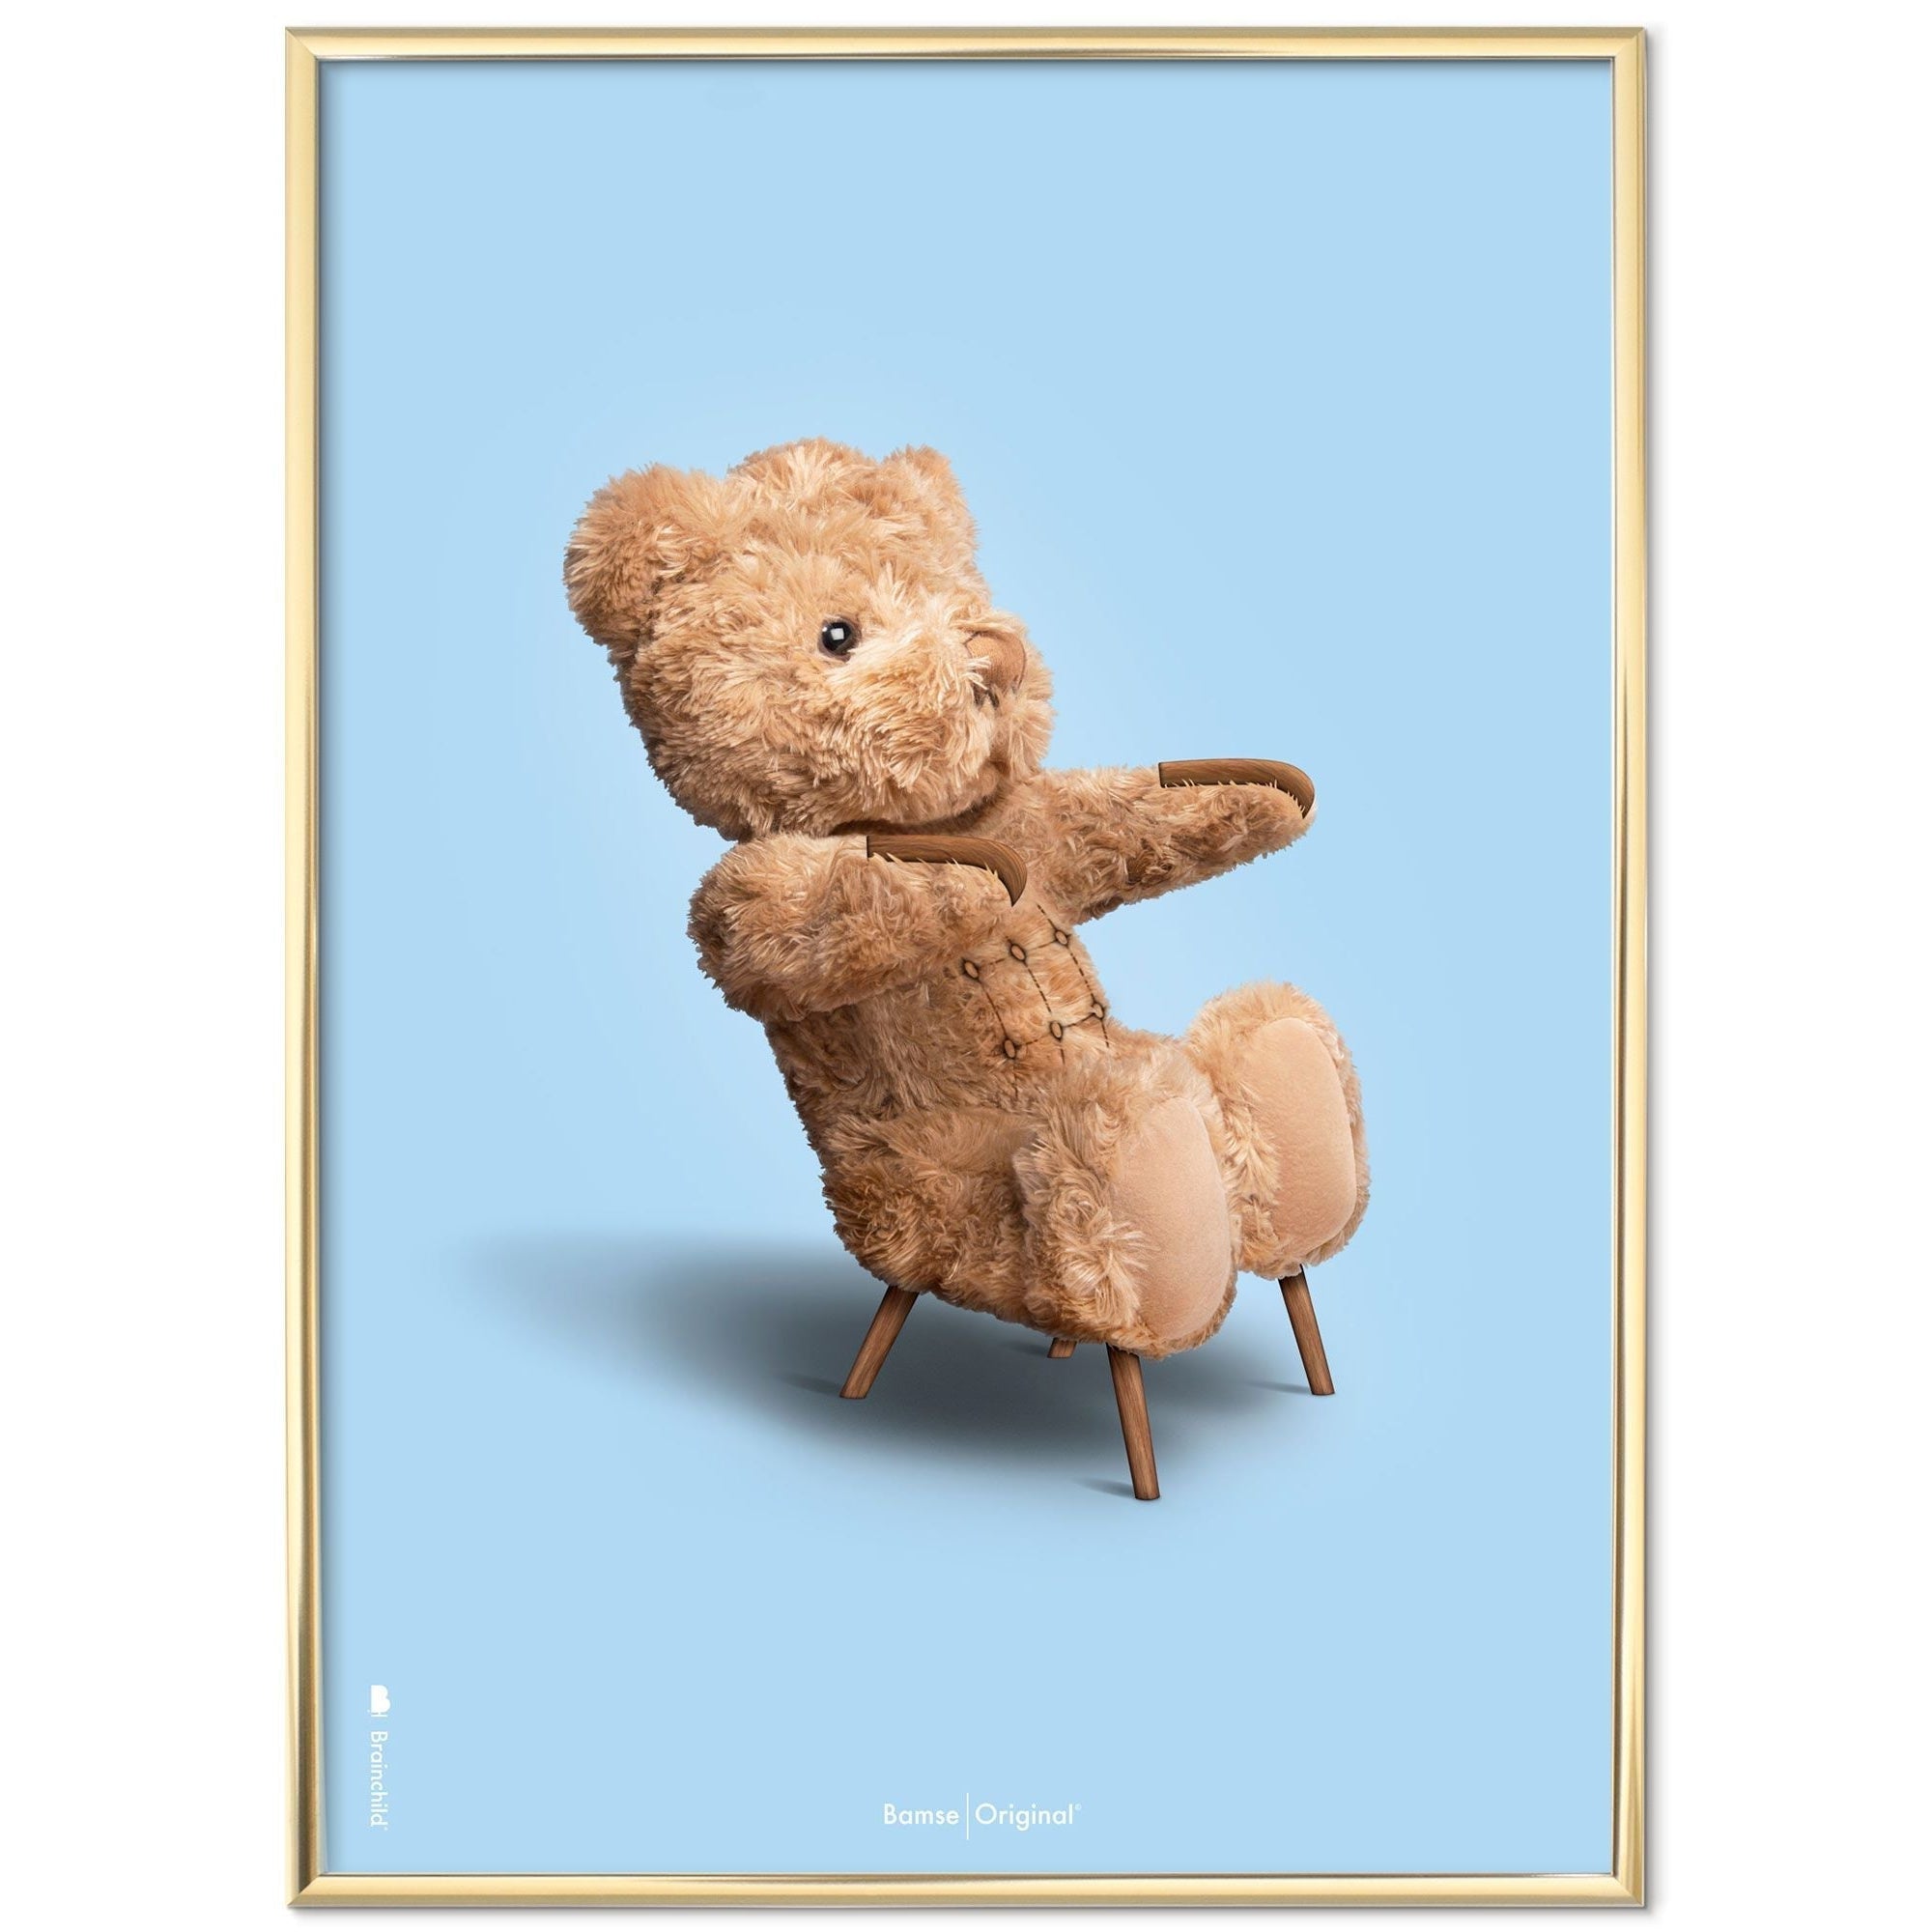 Brainchild Teddy Bear Classic plakát mosazného barevného rámu A5, světle modré pozadí